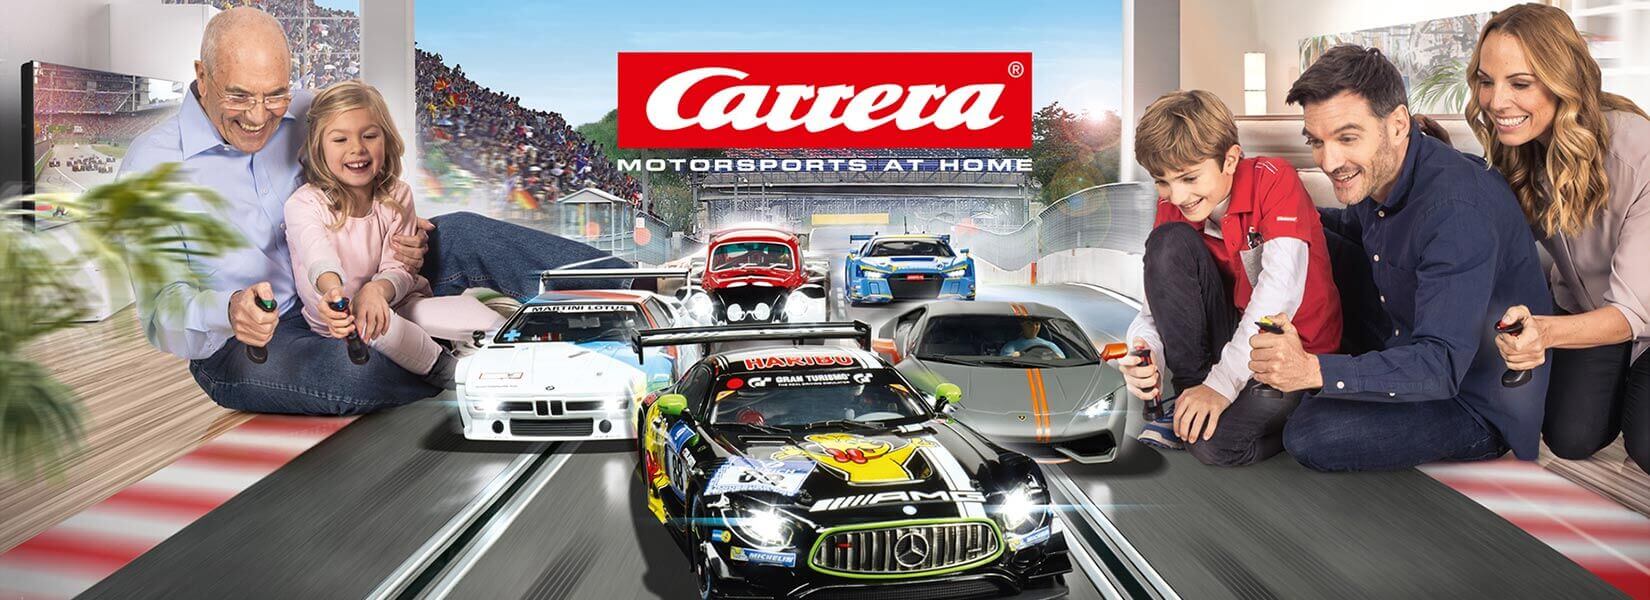 Carrera bringt die Autorennbahn direkt ins Haus